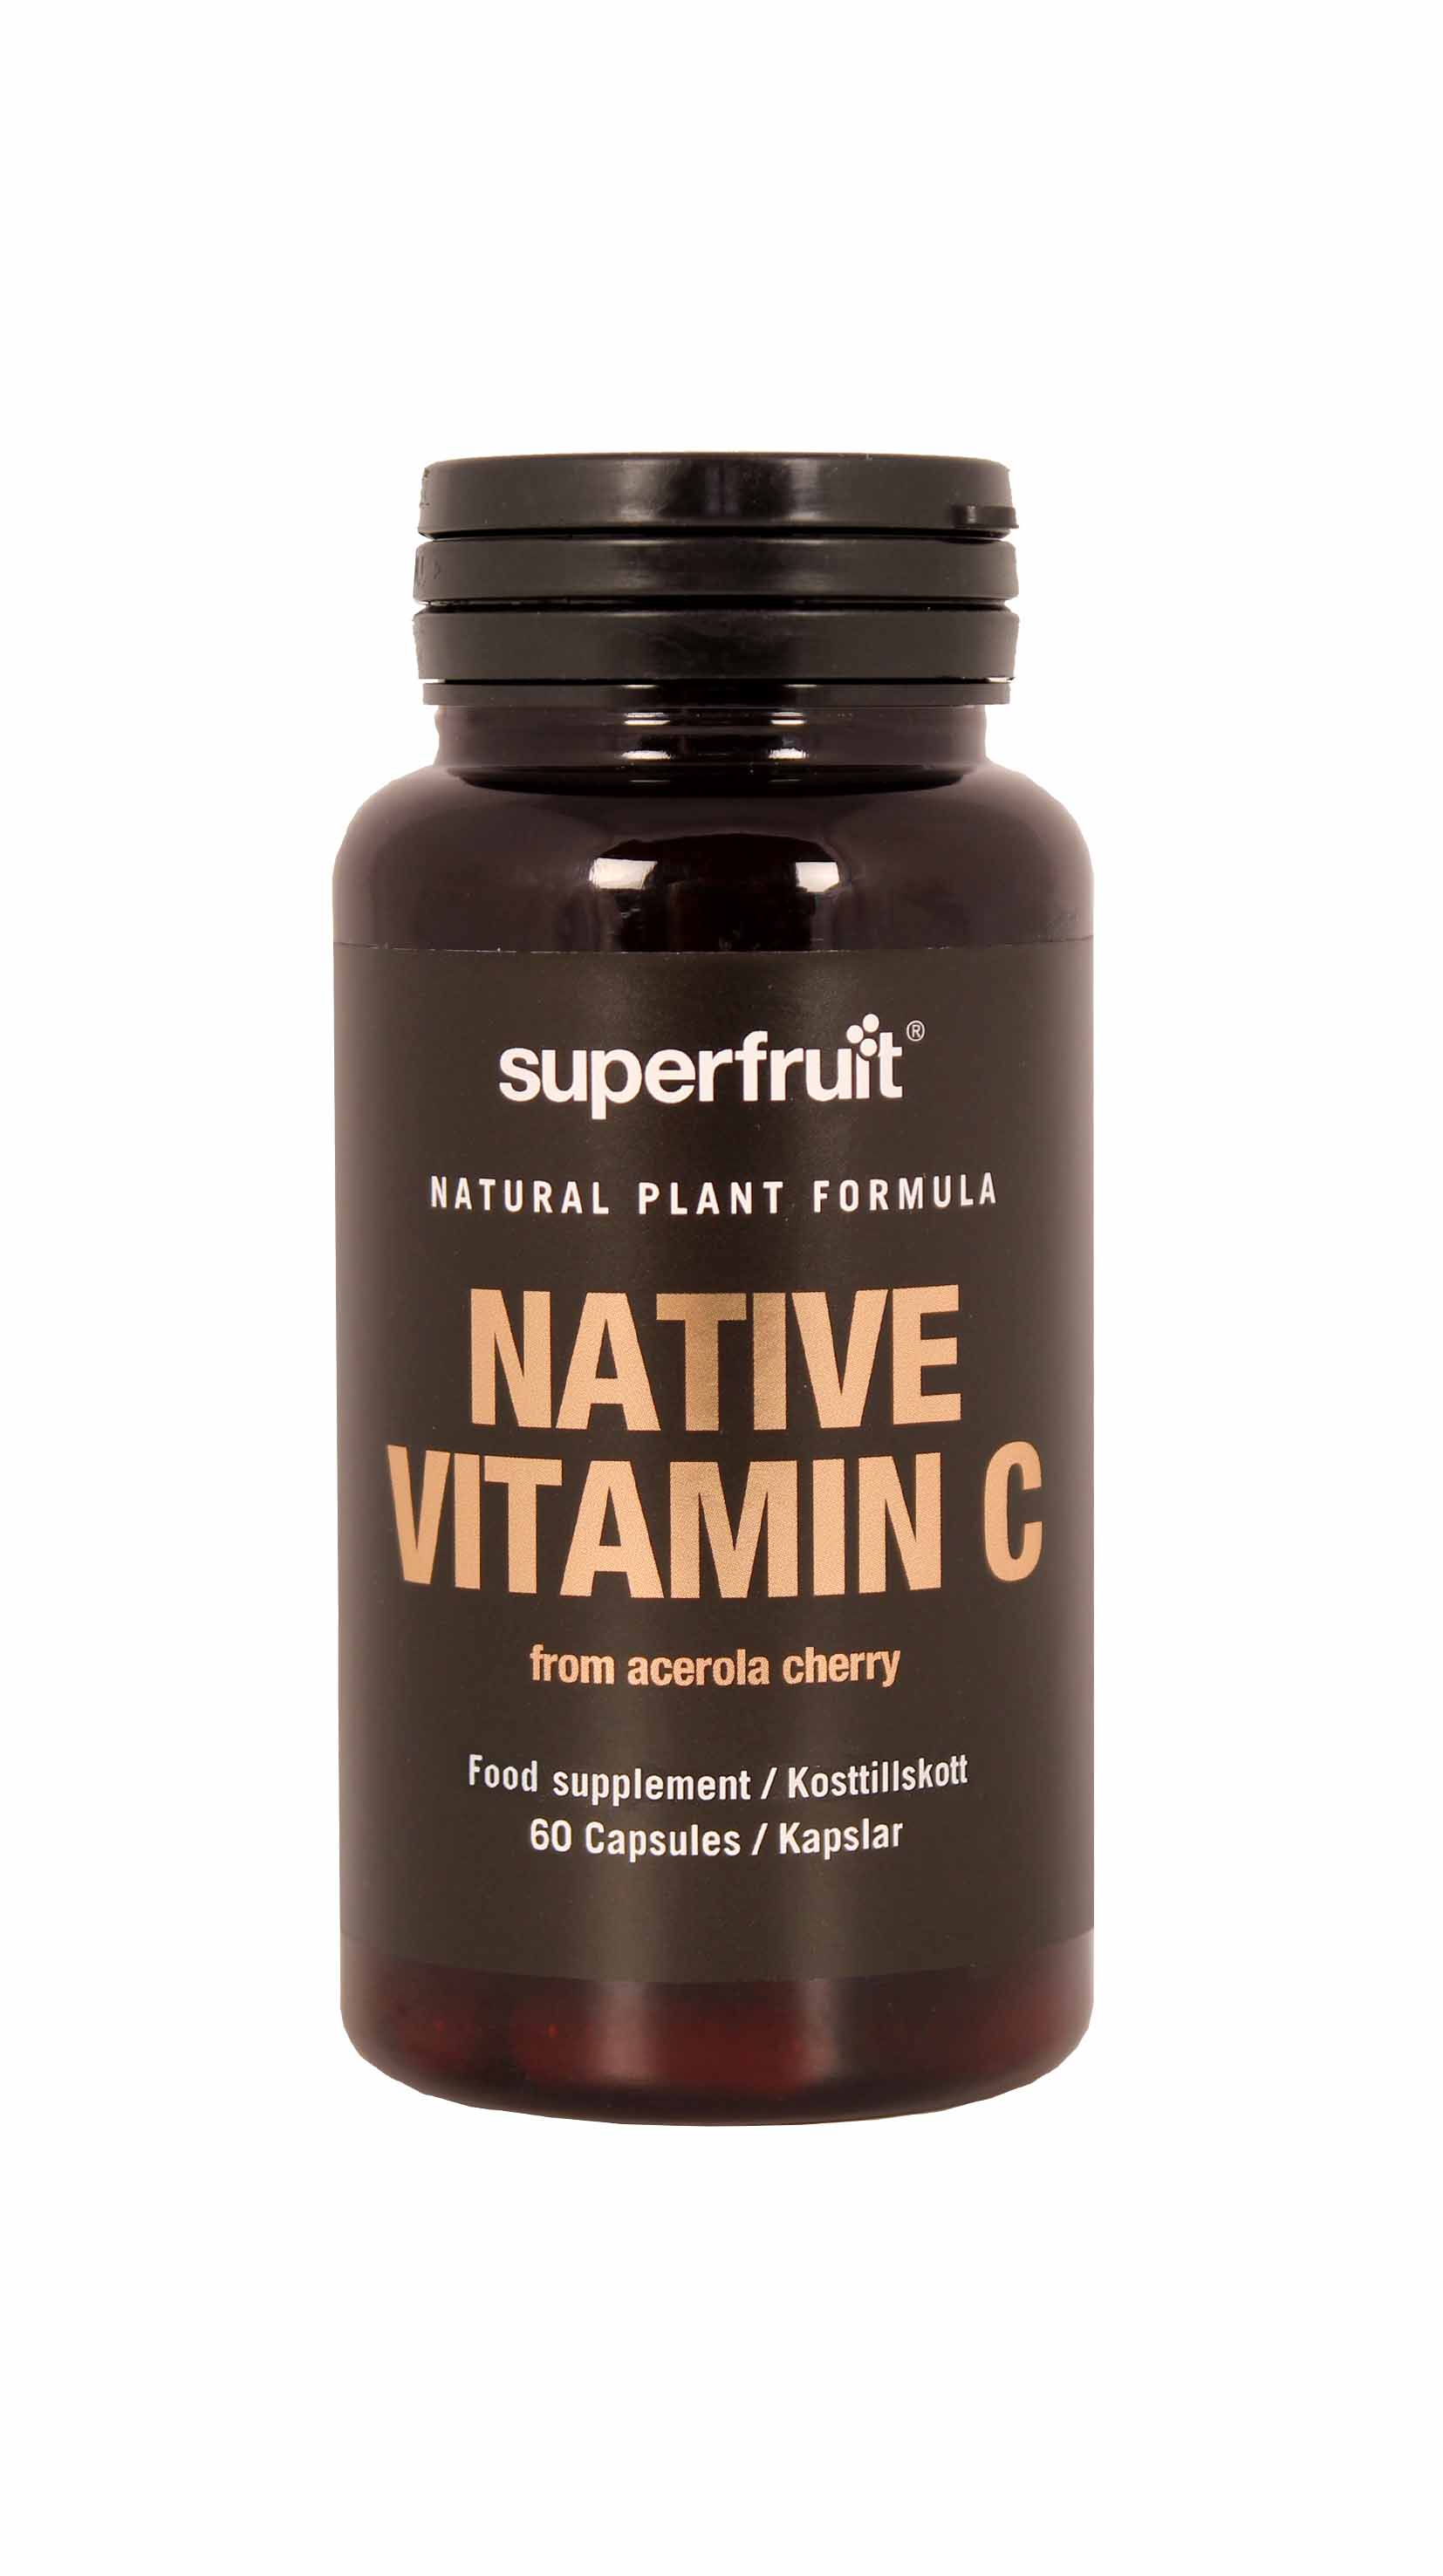 Superfruit Native Vitamin C 60 kapsxlar